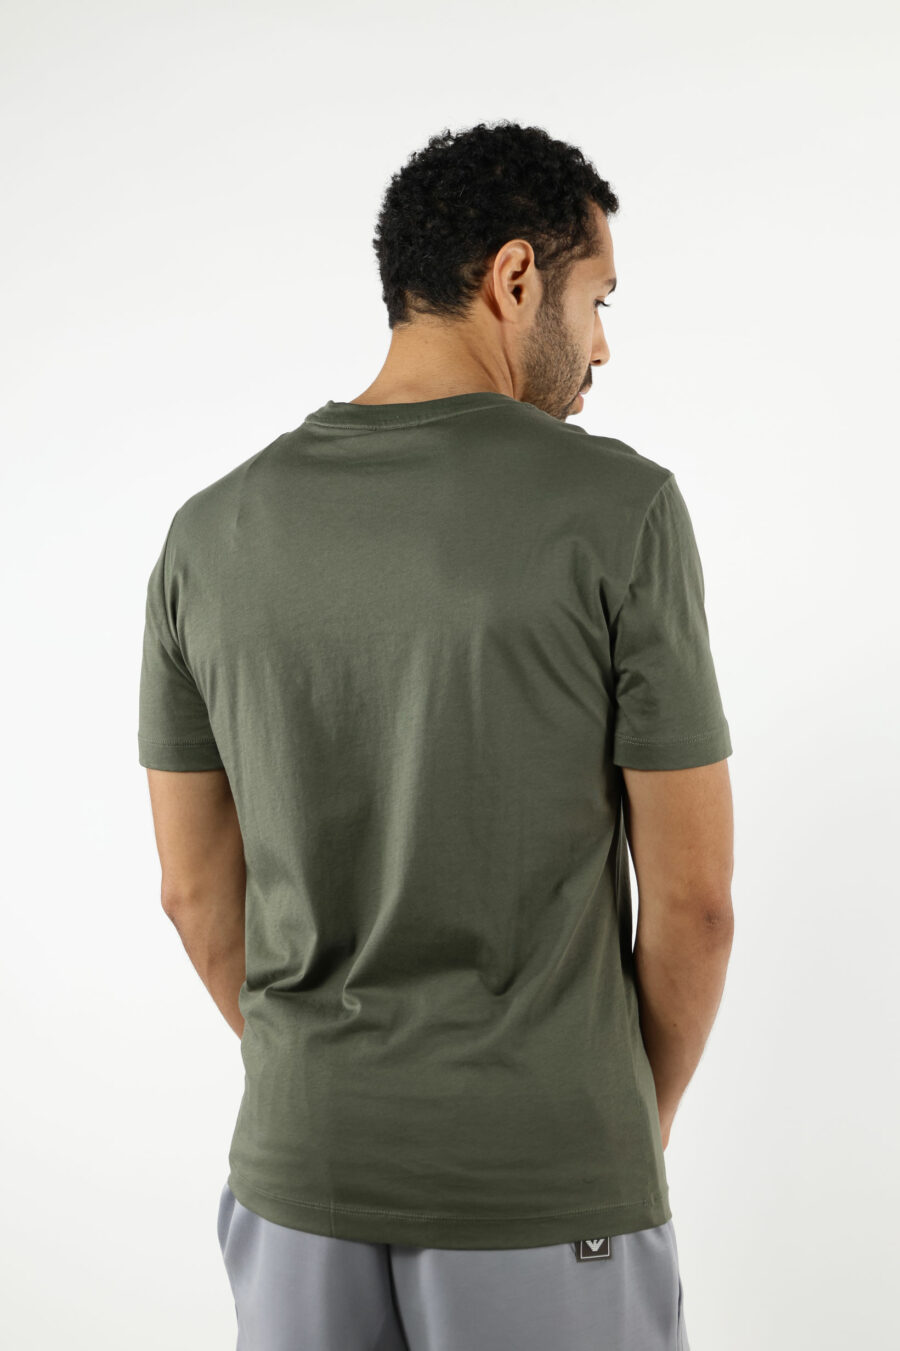 Camiseta verde con maxilogo "lux identity" en degradé - 110935